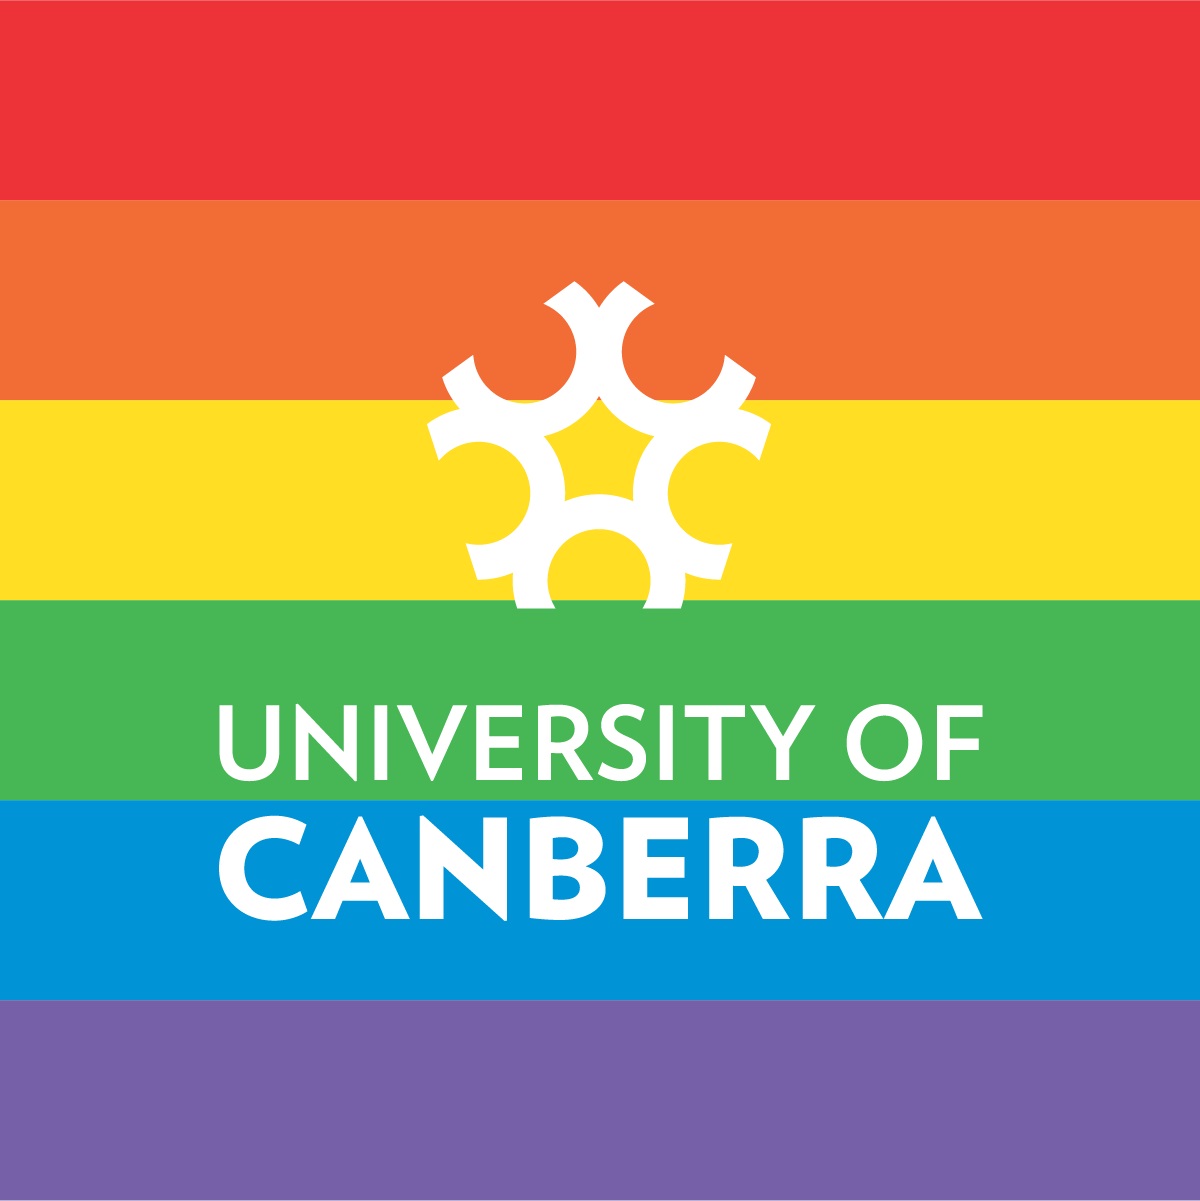 University of Canberra Rainbow Flag logo